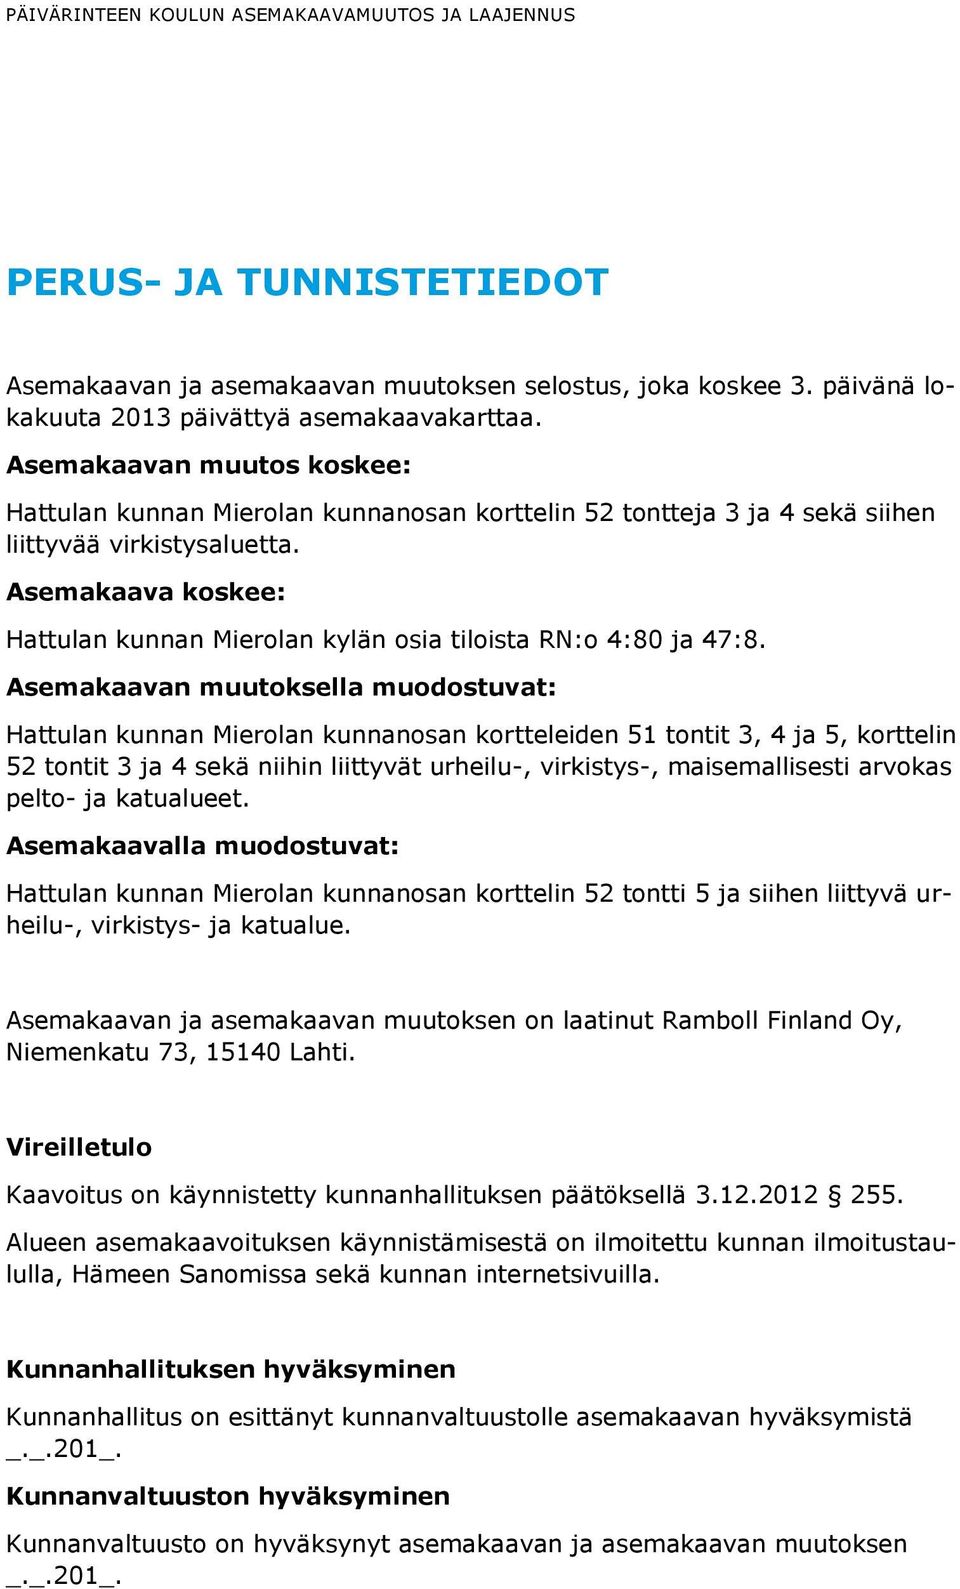 Asemakaava koskee: Hattulan kunnan Mierolan kylän osia tiloista RN:o 4:80 ja 47:8.